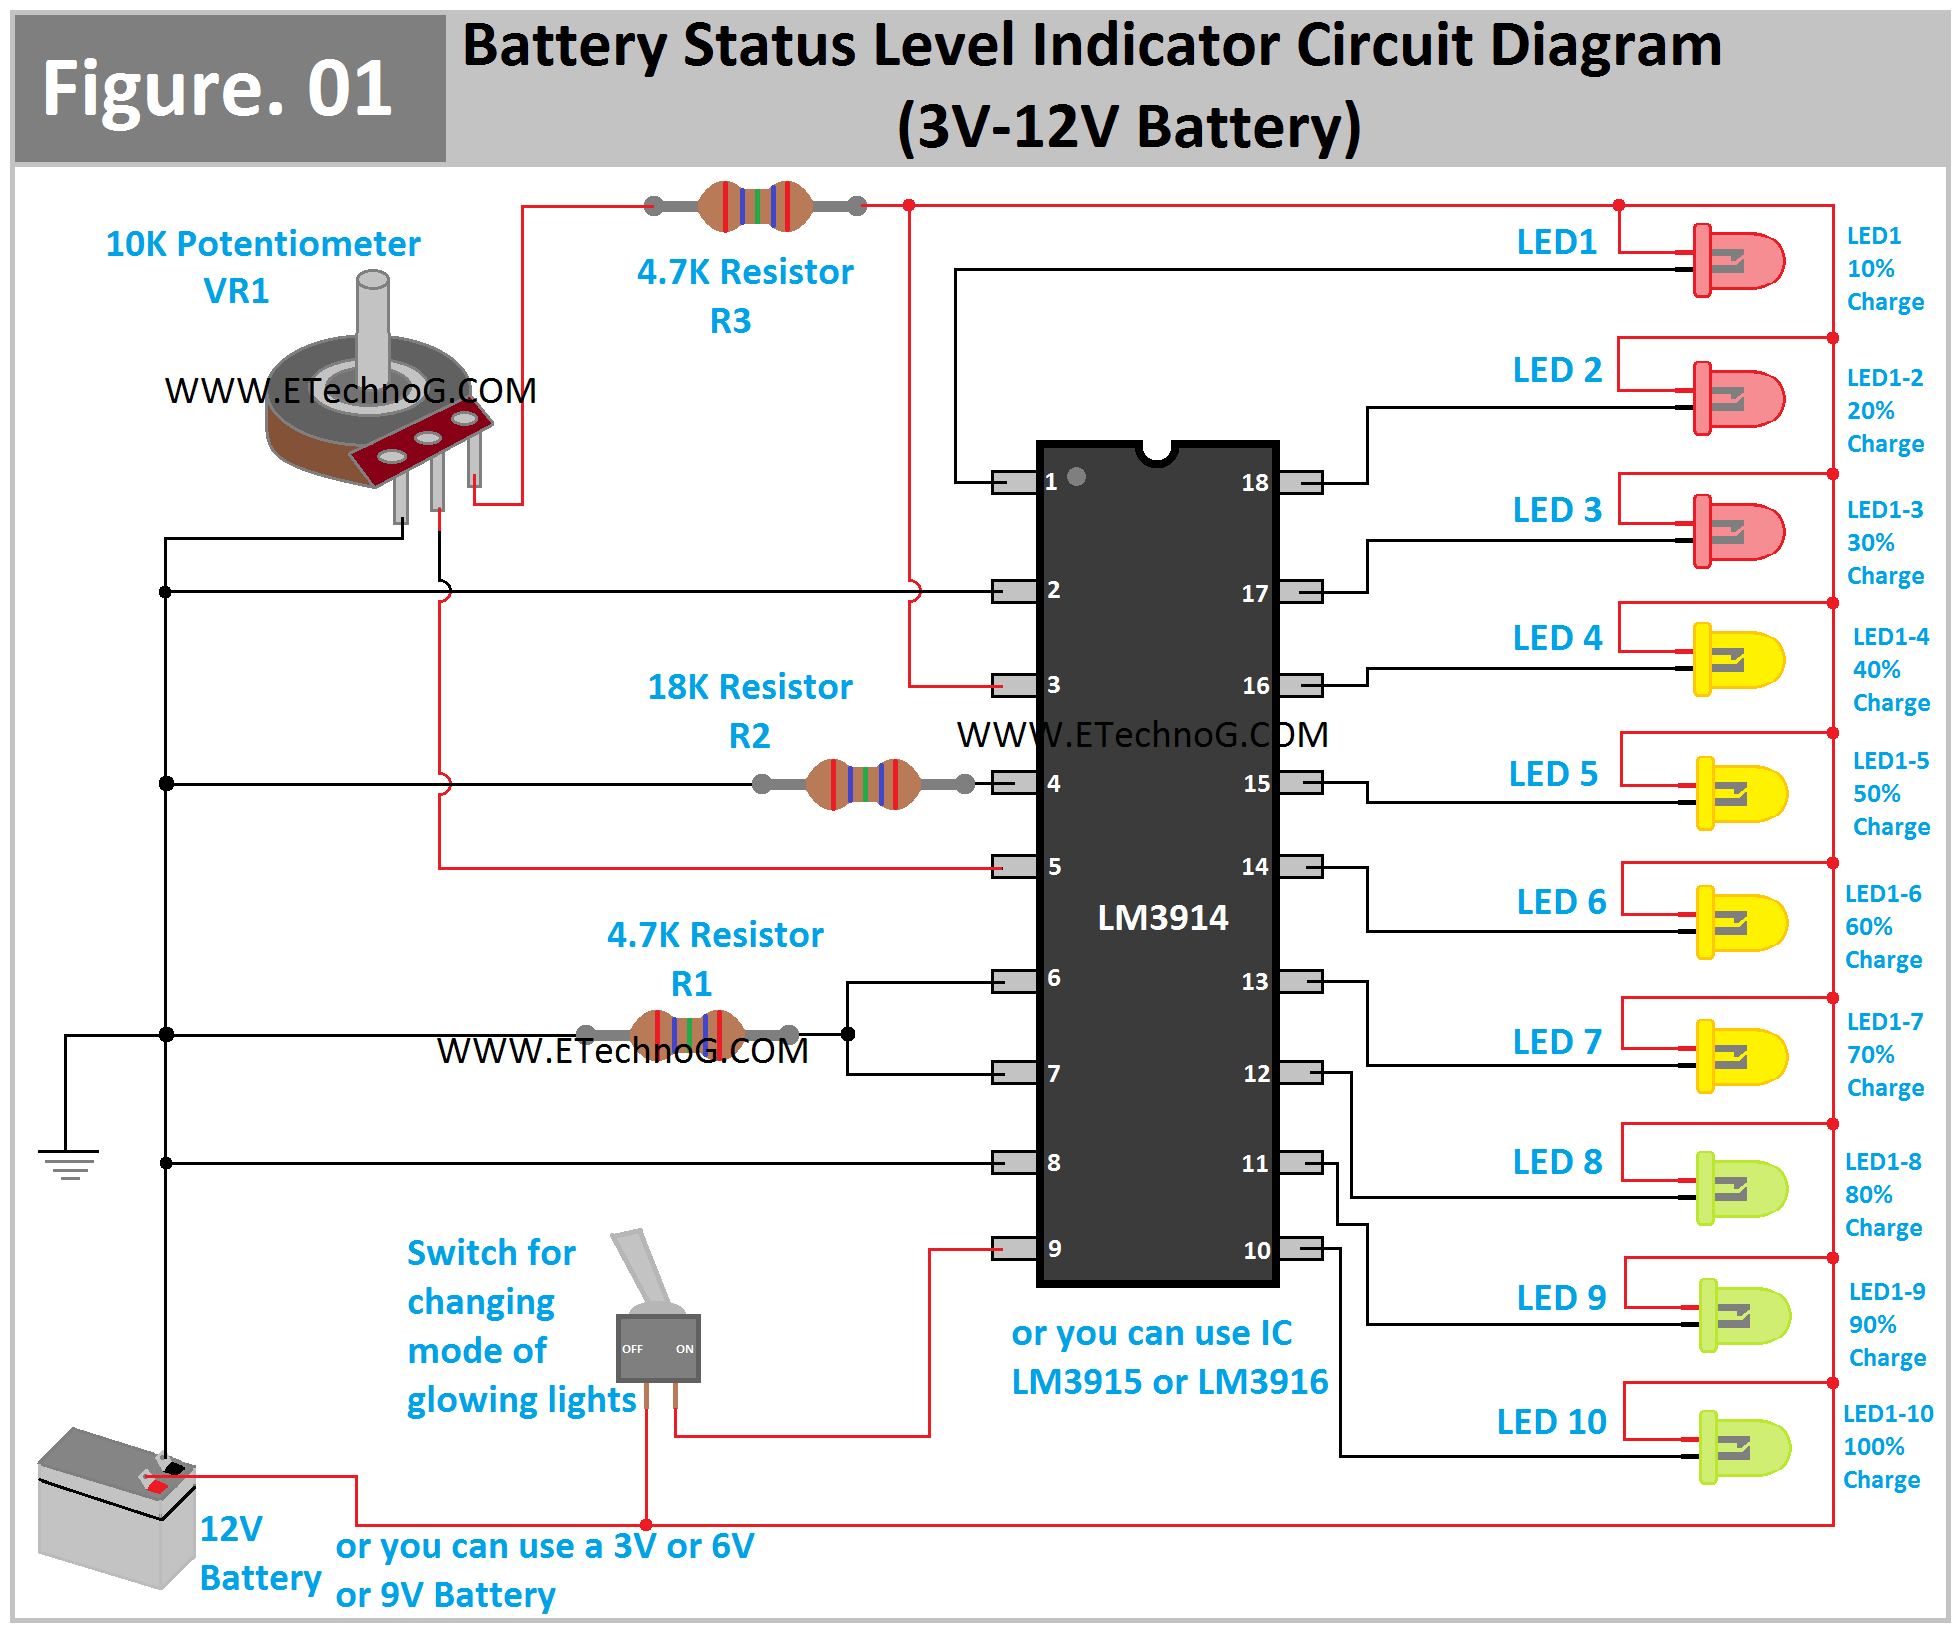 Battery Status or Level Indicator Circuit Diagram